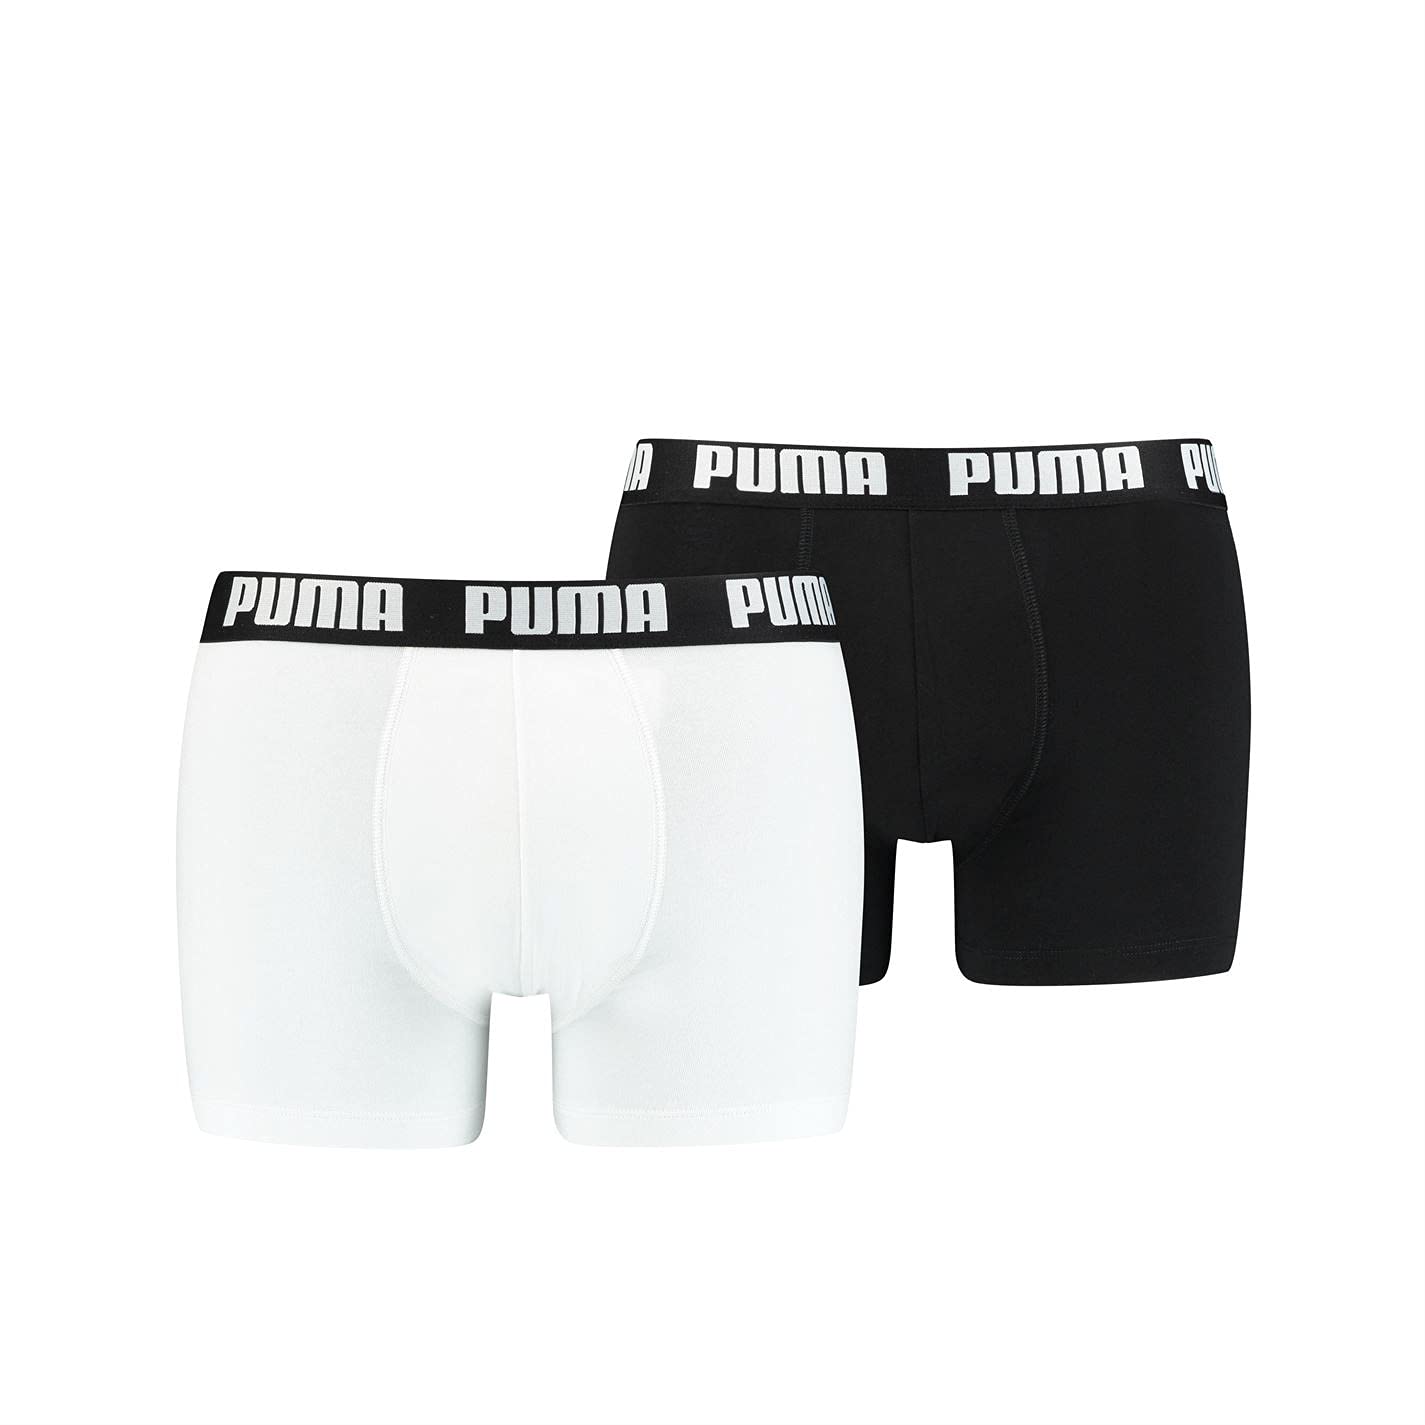 PUMA Herren Boxer Short Boxershort 2er Pack Größe S - XXL White/Black NEU, Größe:L